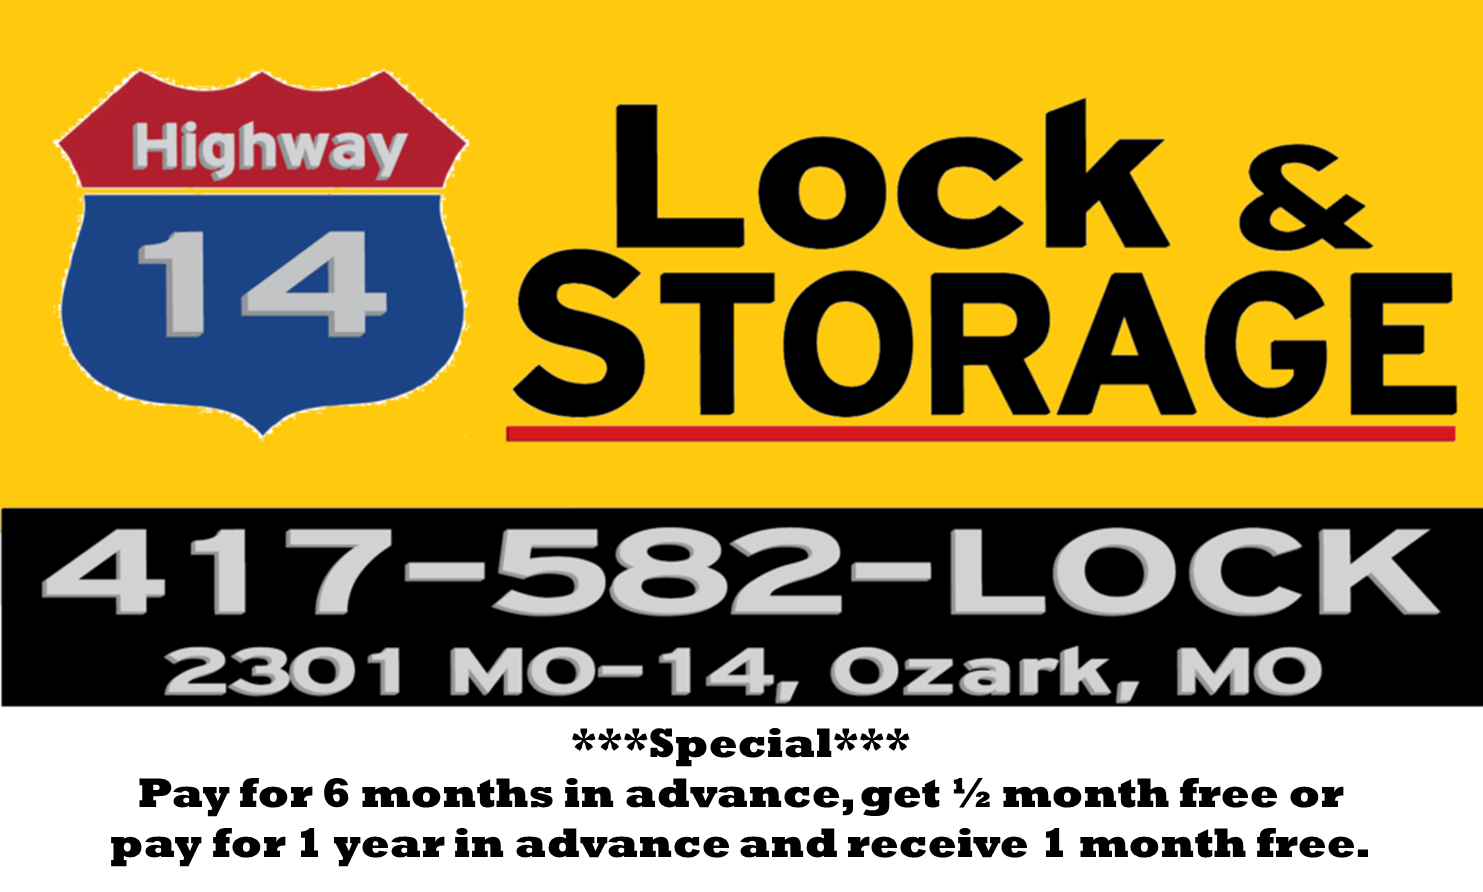 Highway 14 Lock & Storage